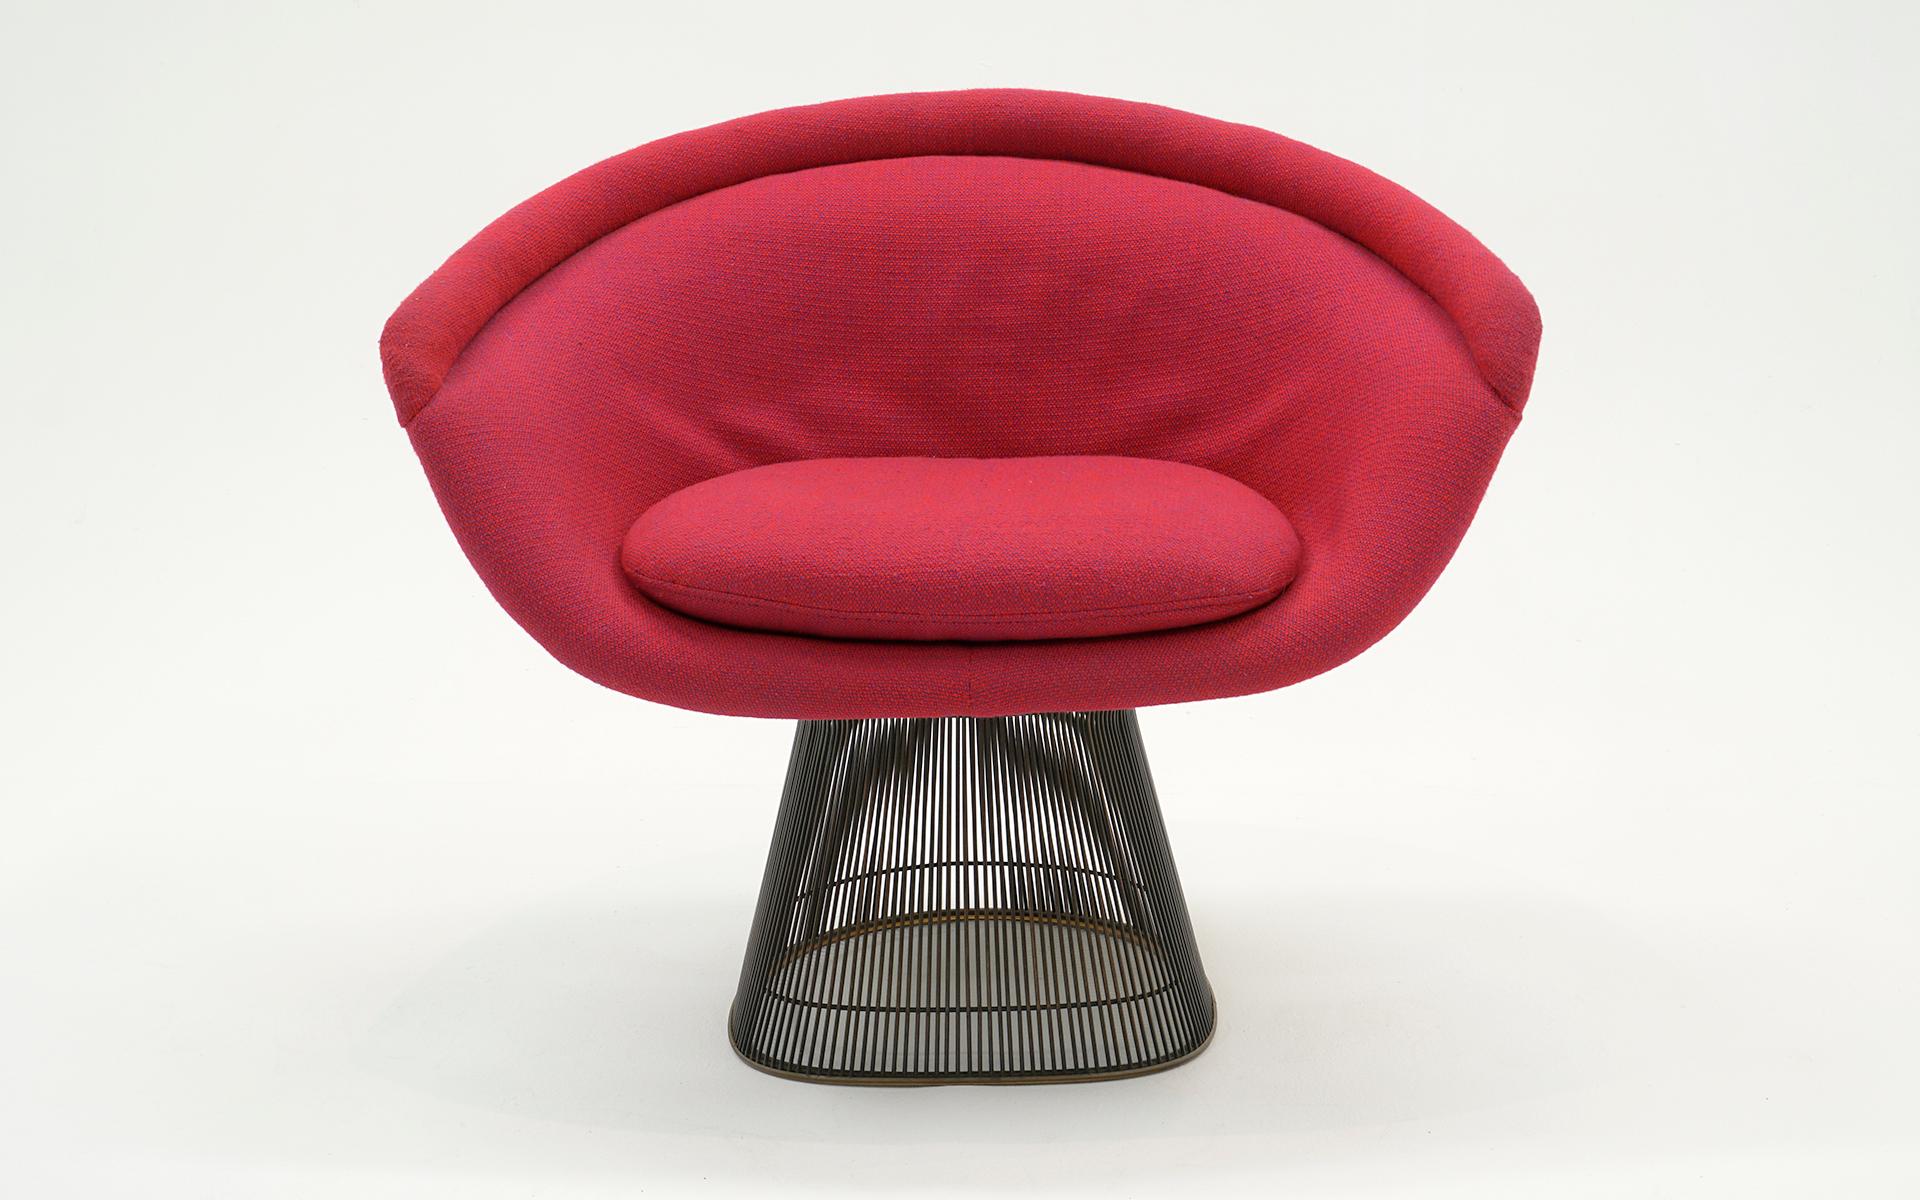 Warren Platner Lounge Chair in rotem Knoll-Stoff mit dem teureren Bronze-Gestell.  Der Rahmen ist in gutem Zustand ohne Rost.  Der Schaumstoff ist gut gepolstert, der Stoff auf der Innenseite der Rückenlehne weist jedoch lose Stellen auf, wie Sie